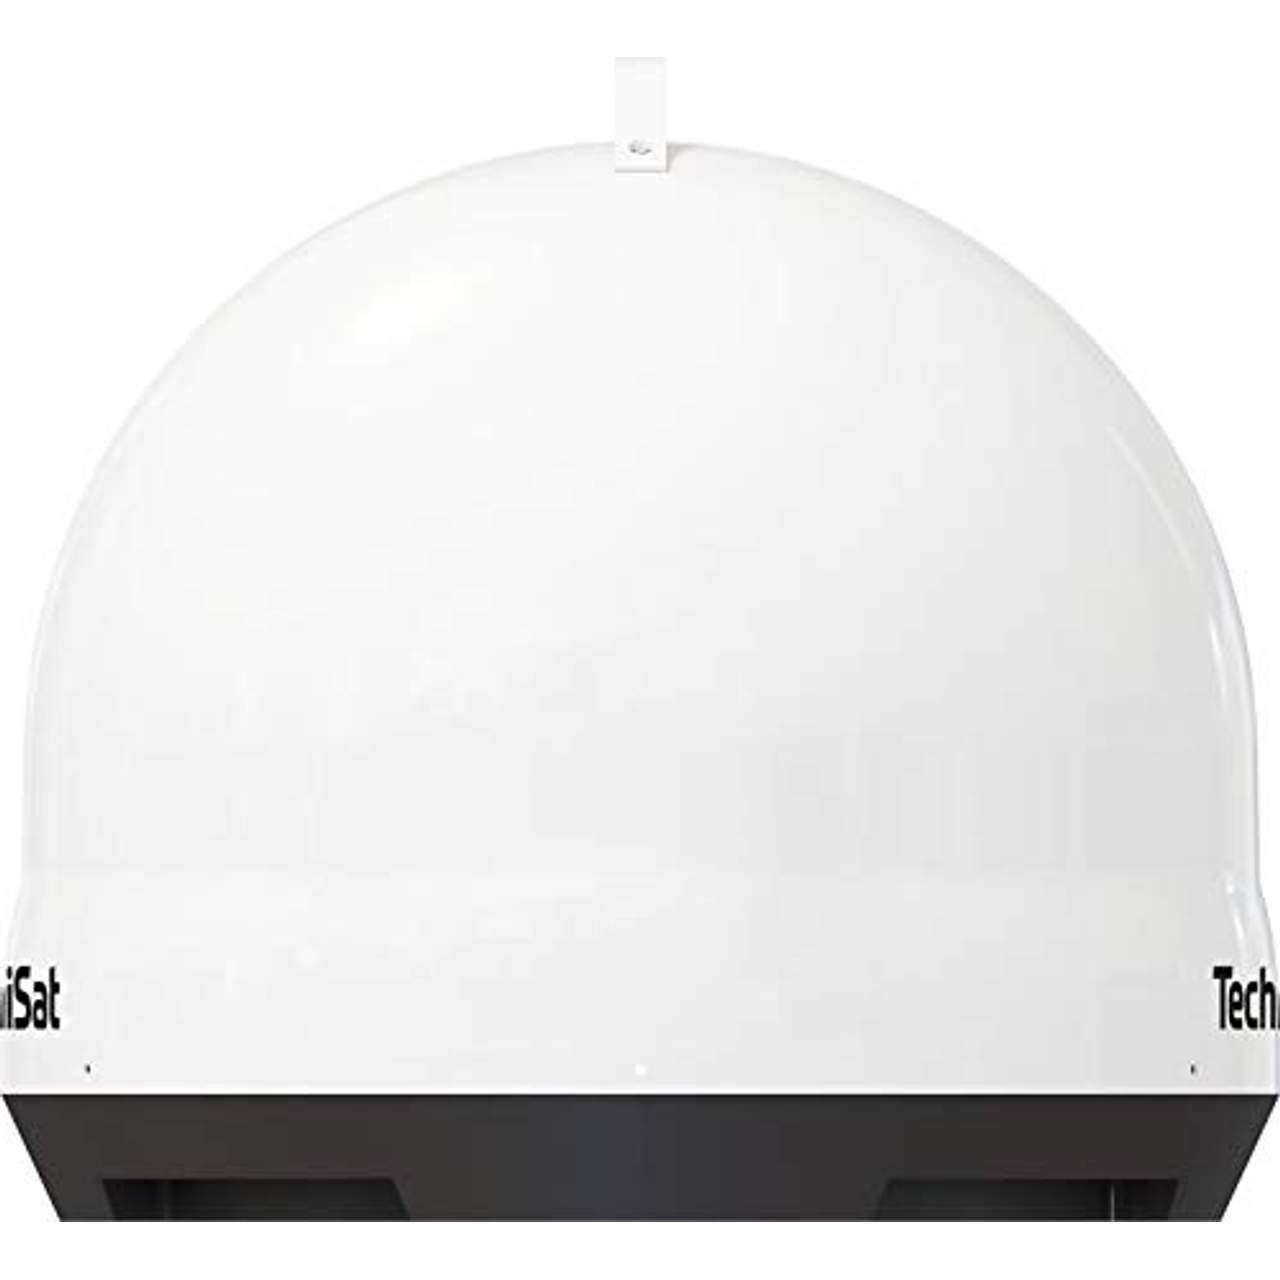 TechniSat Skyrider Dome Vollautomatische Sat-Anlage (Twin)